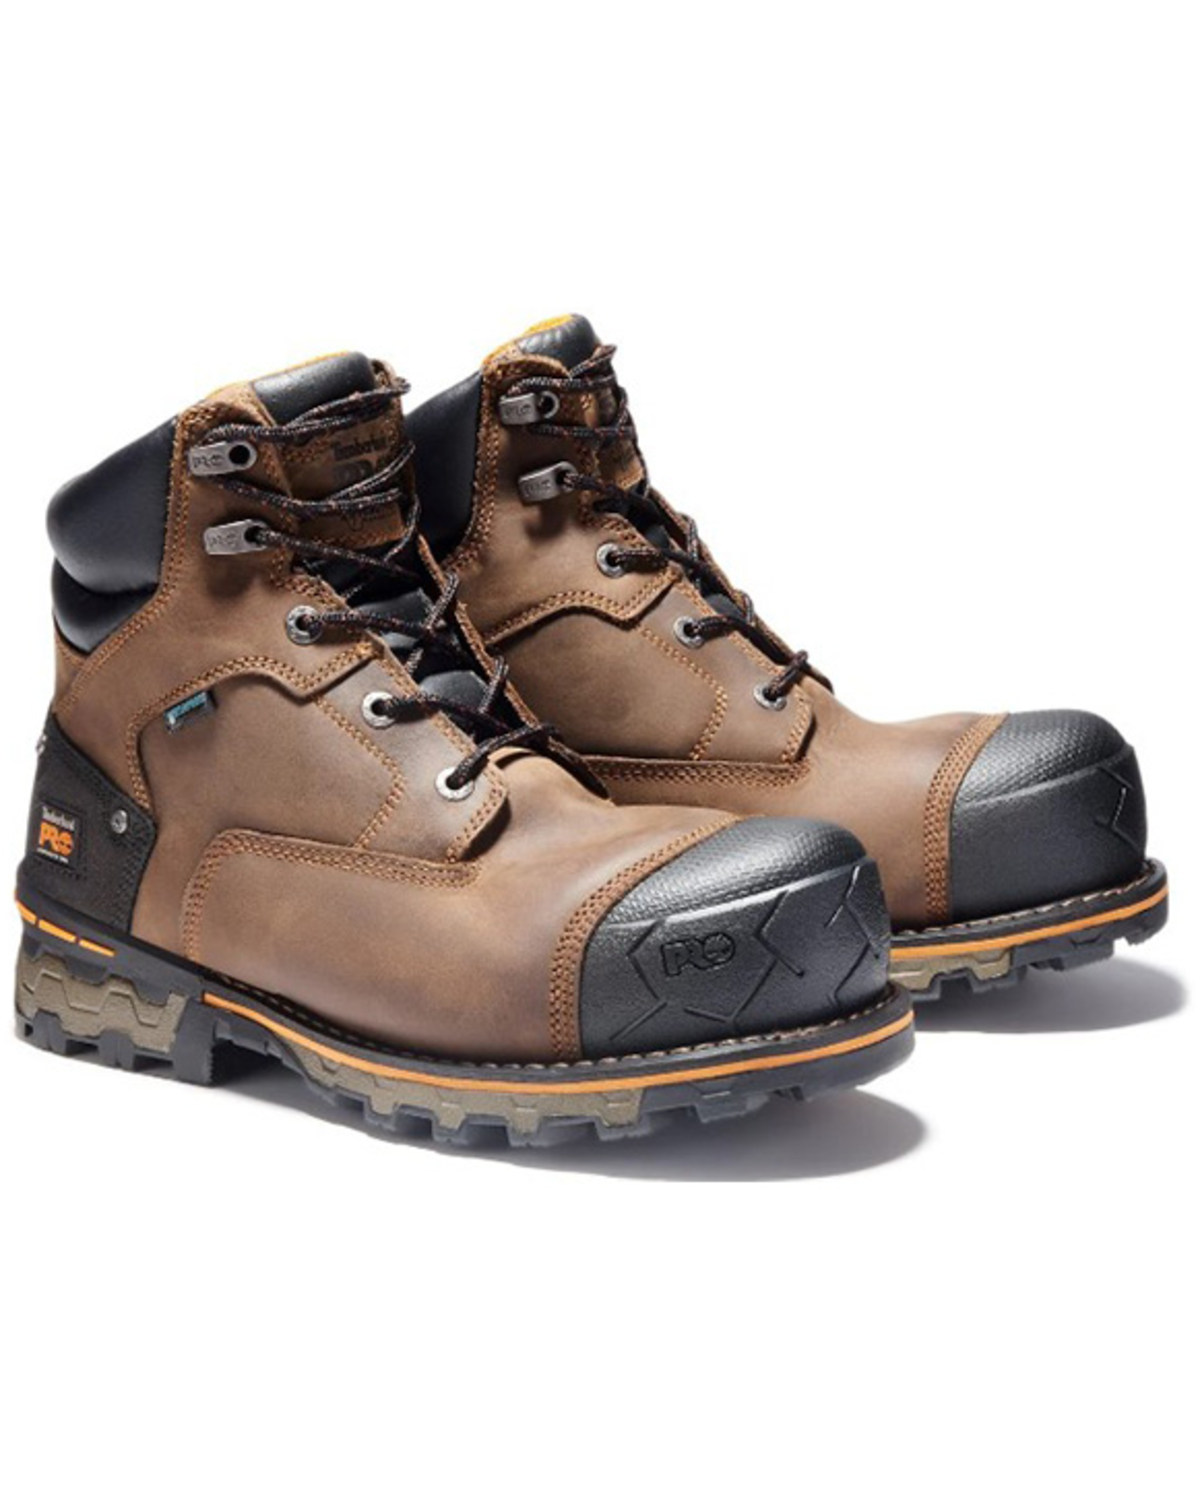 Timberland Men's 6" Boondock Waterproof Work Boots - Composite Toe